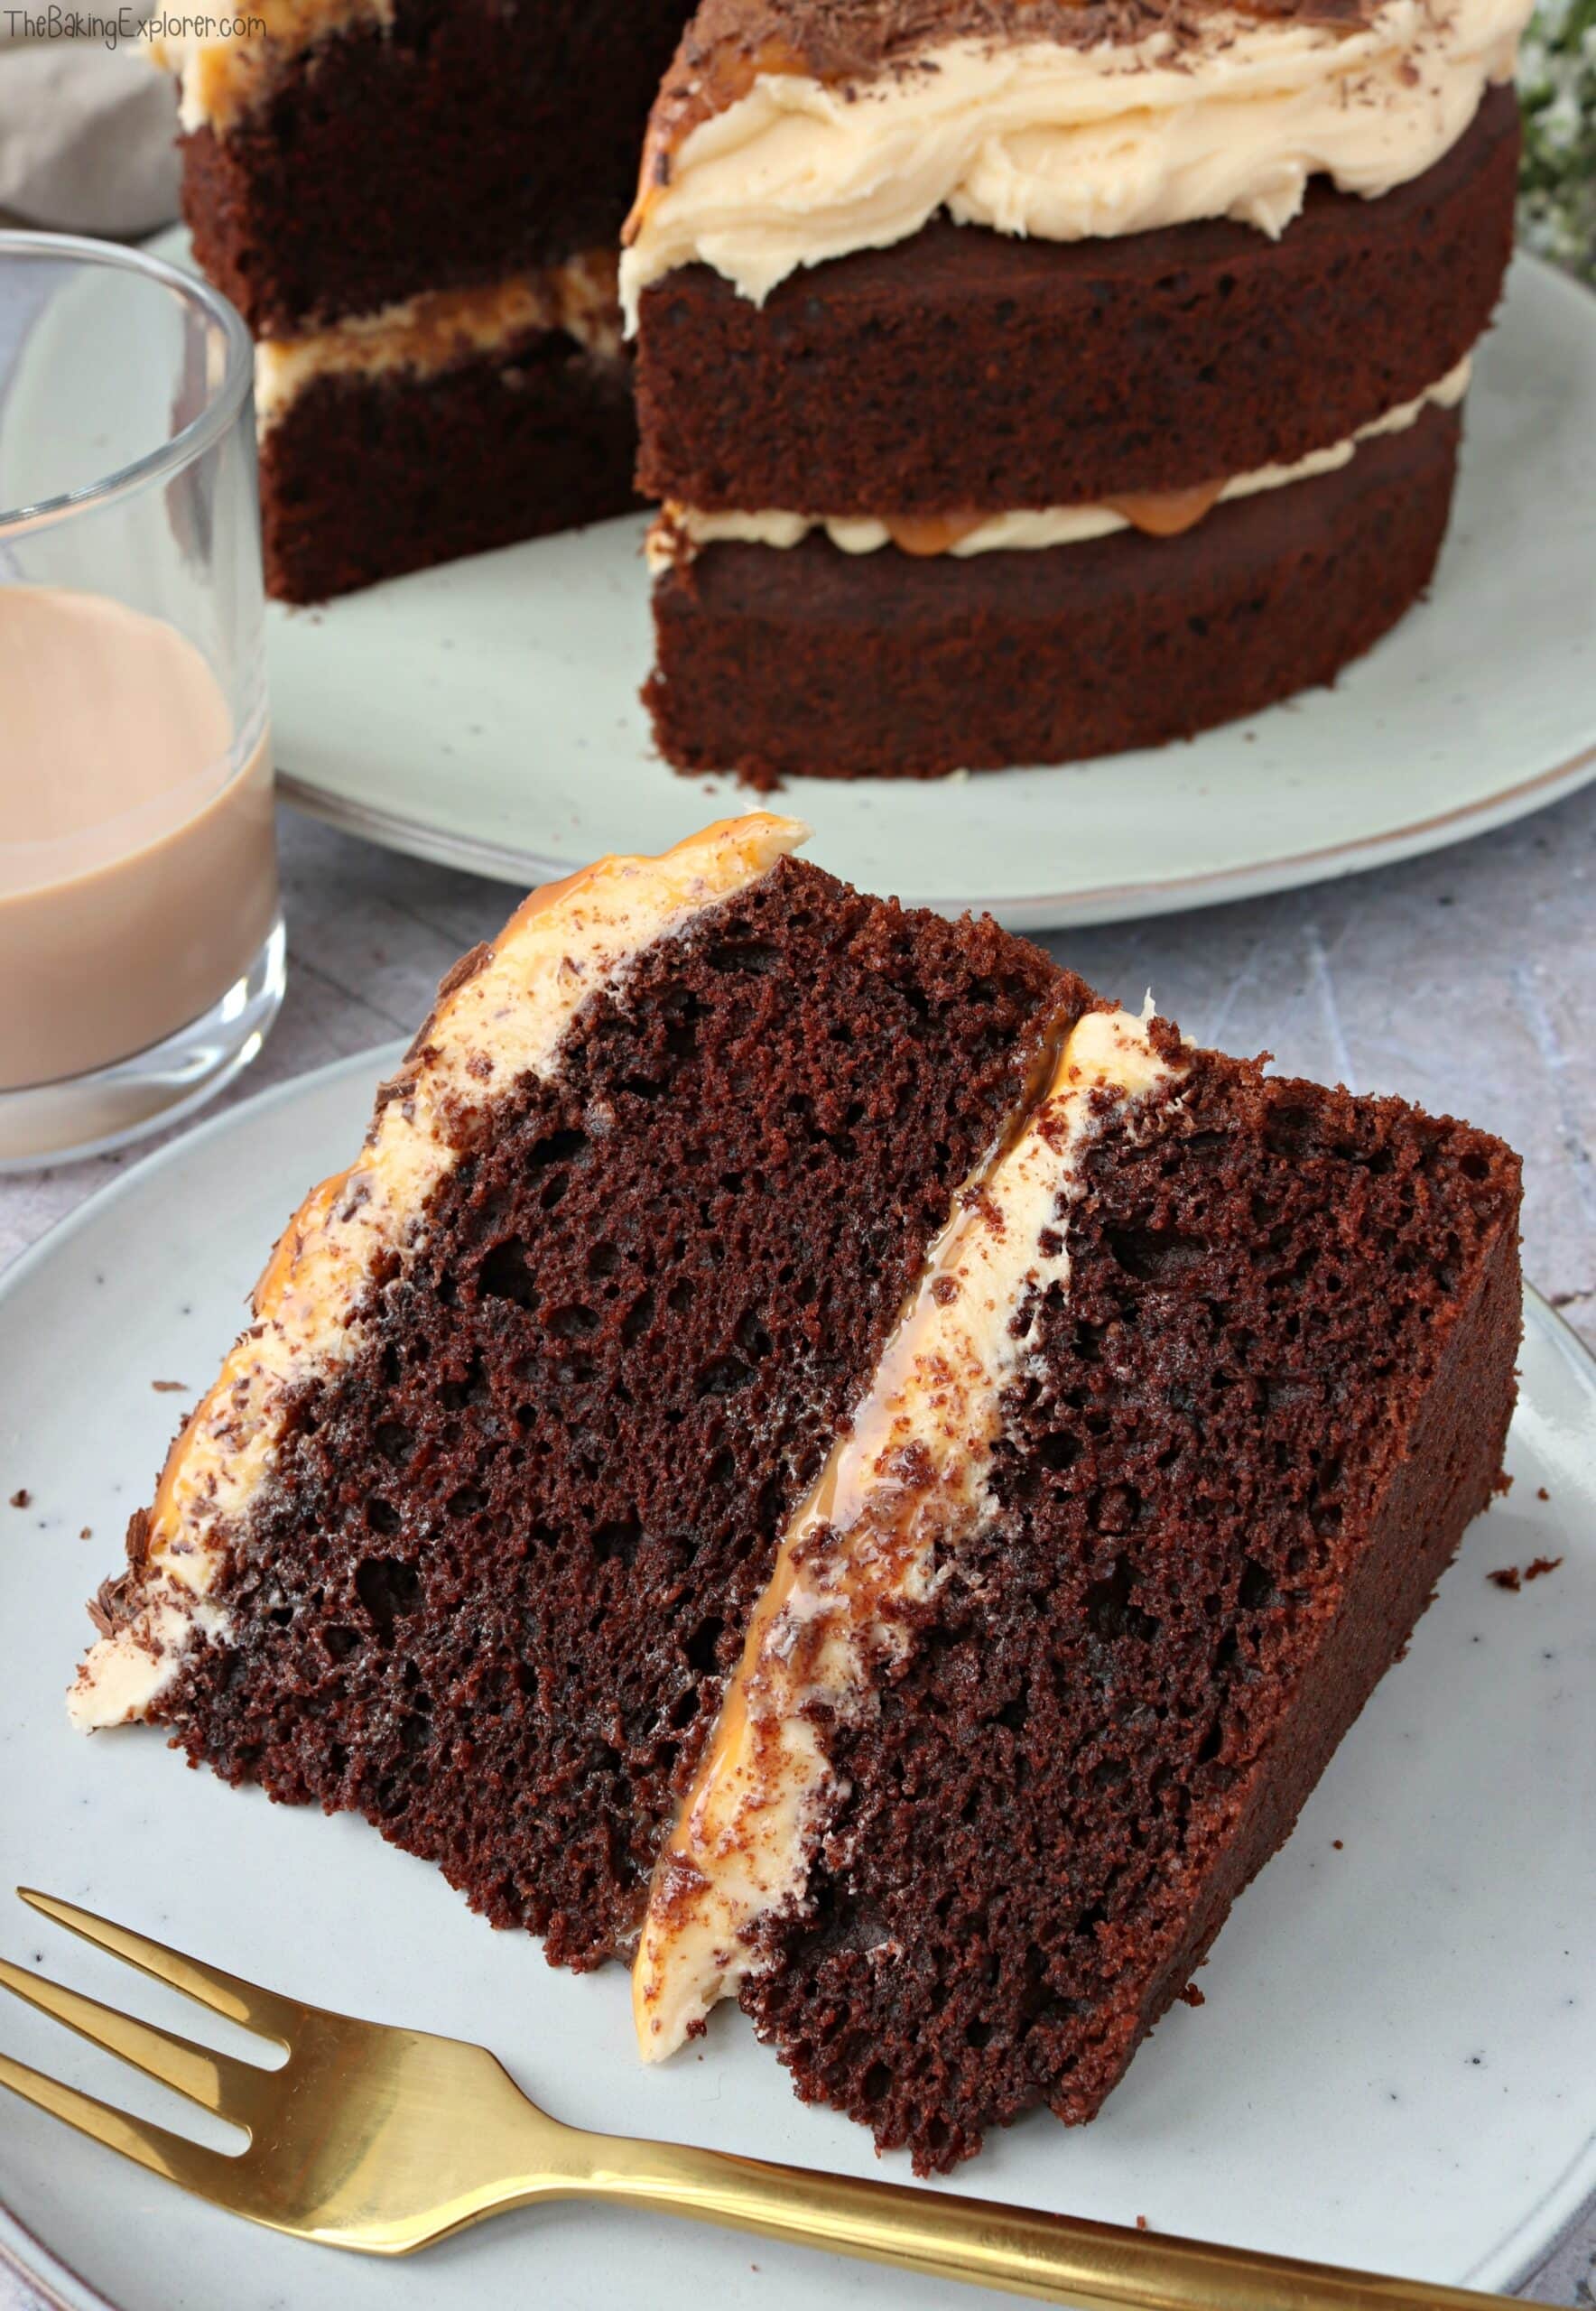 Amarula, Chocolate & Caramel Cake